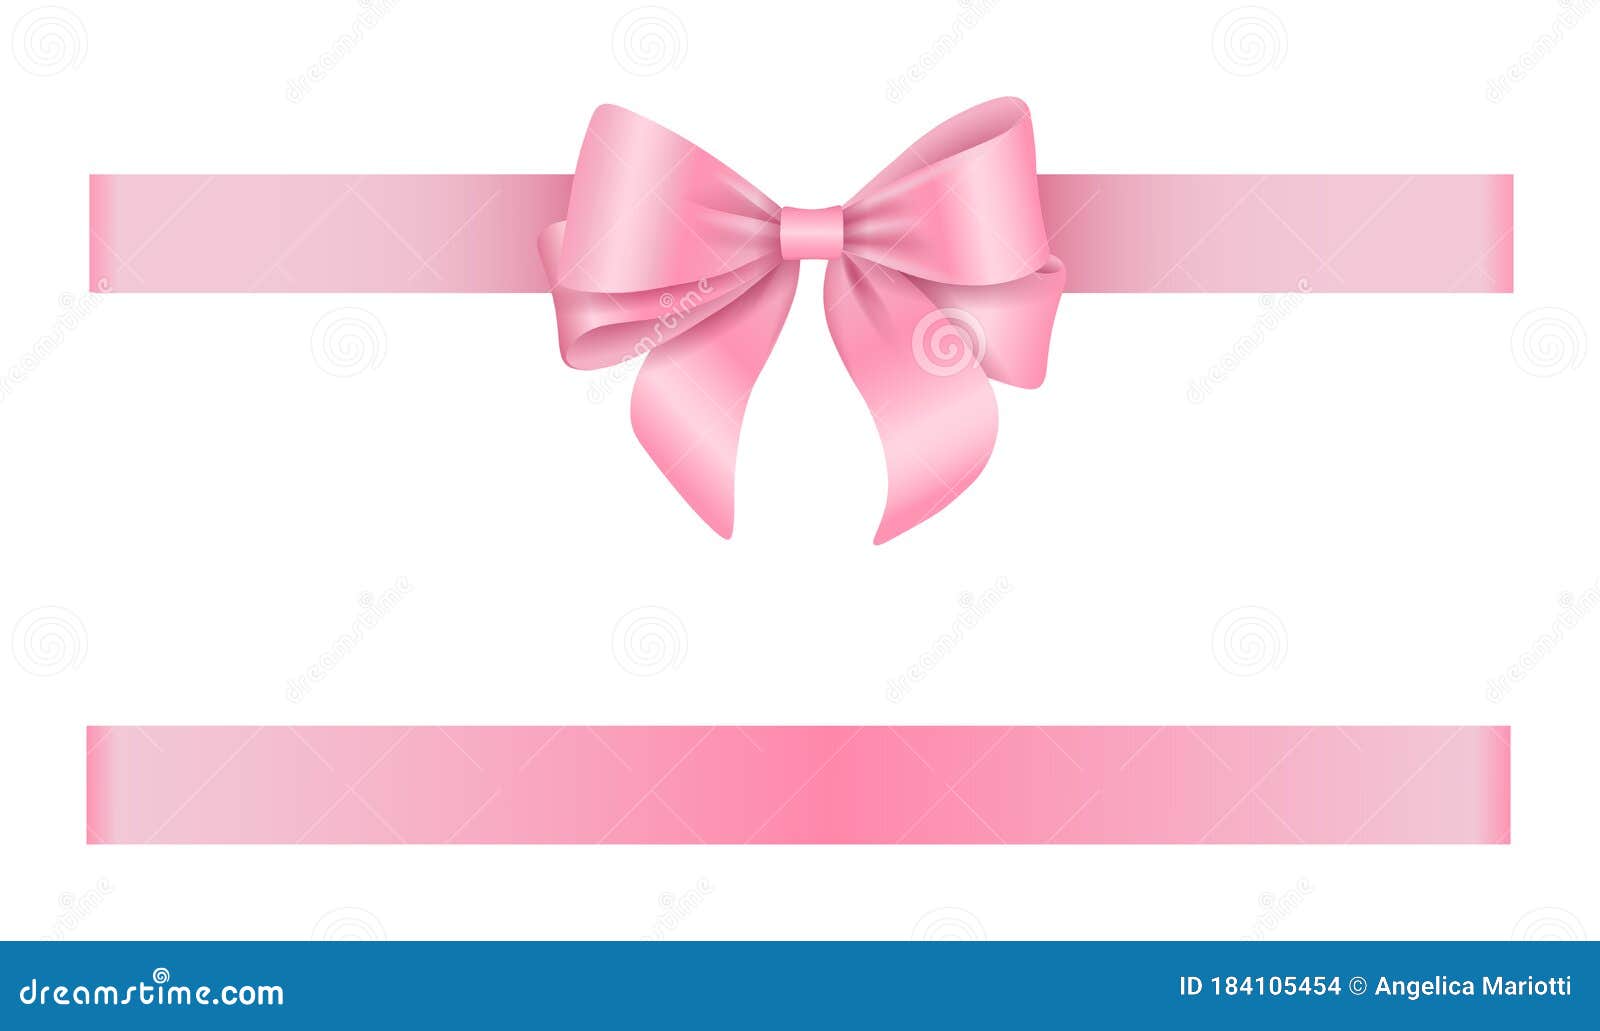 Ribbon bow pink Stock Vector by ©yupiramos 121094890